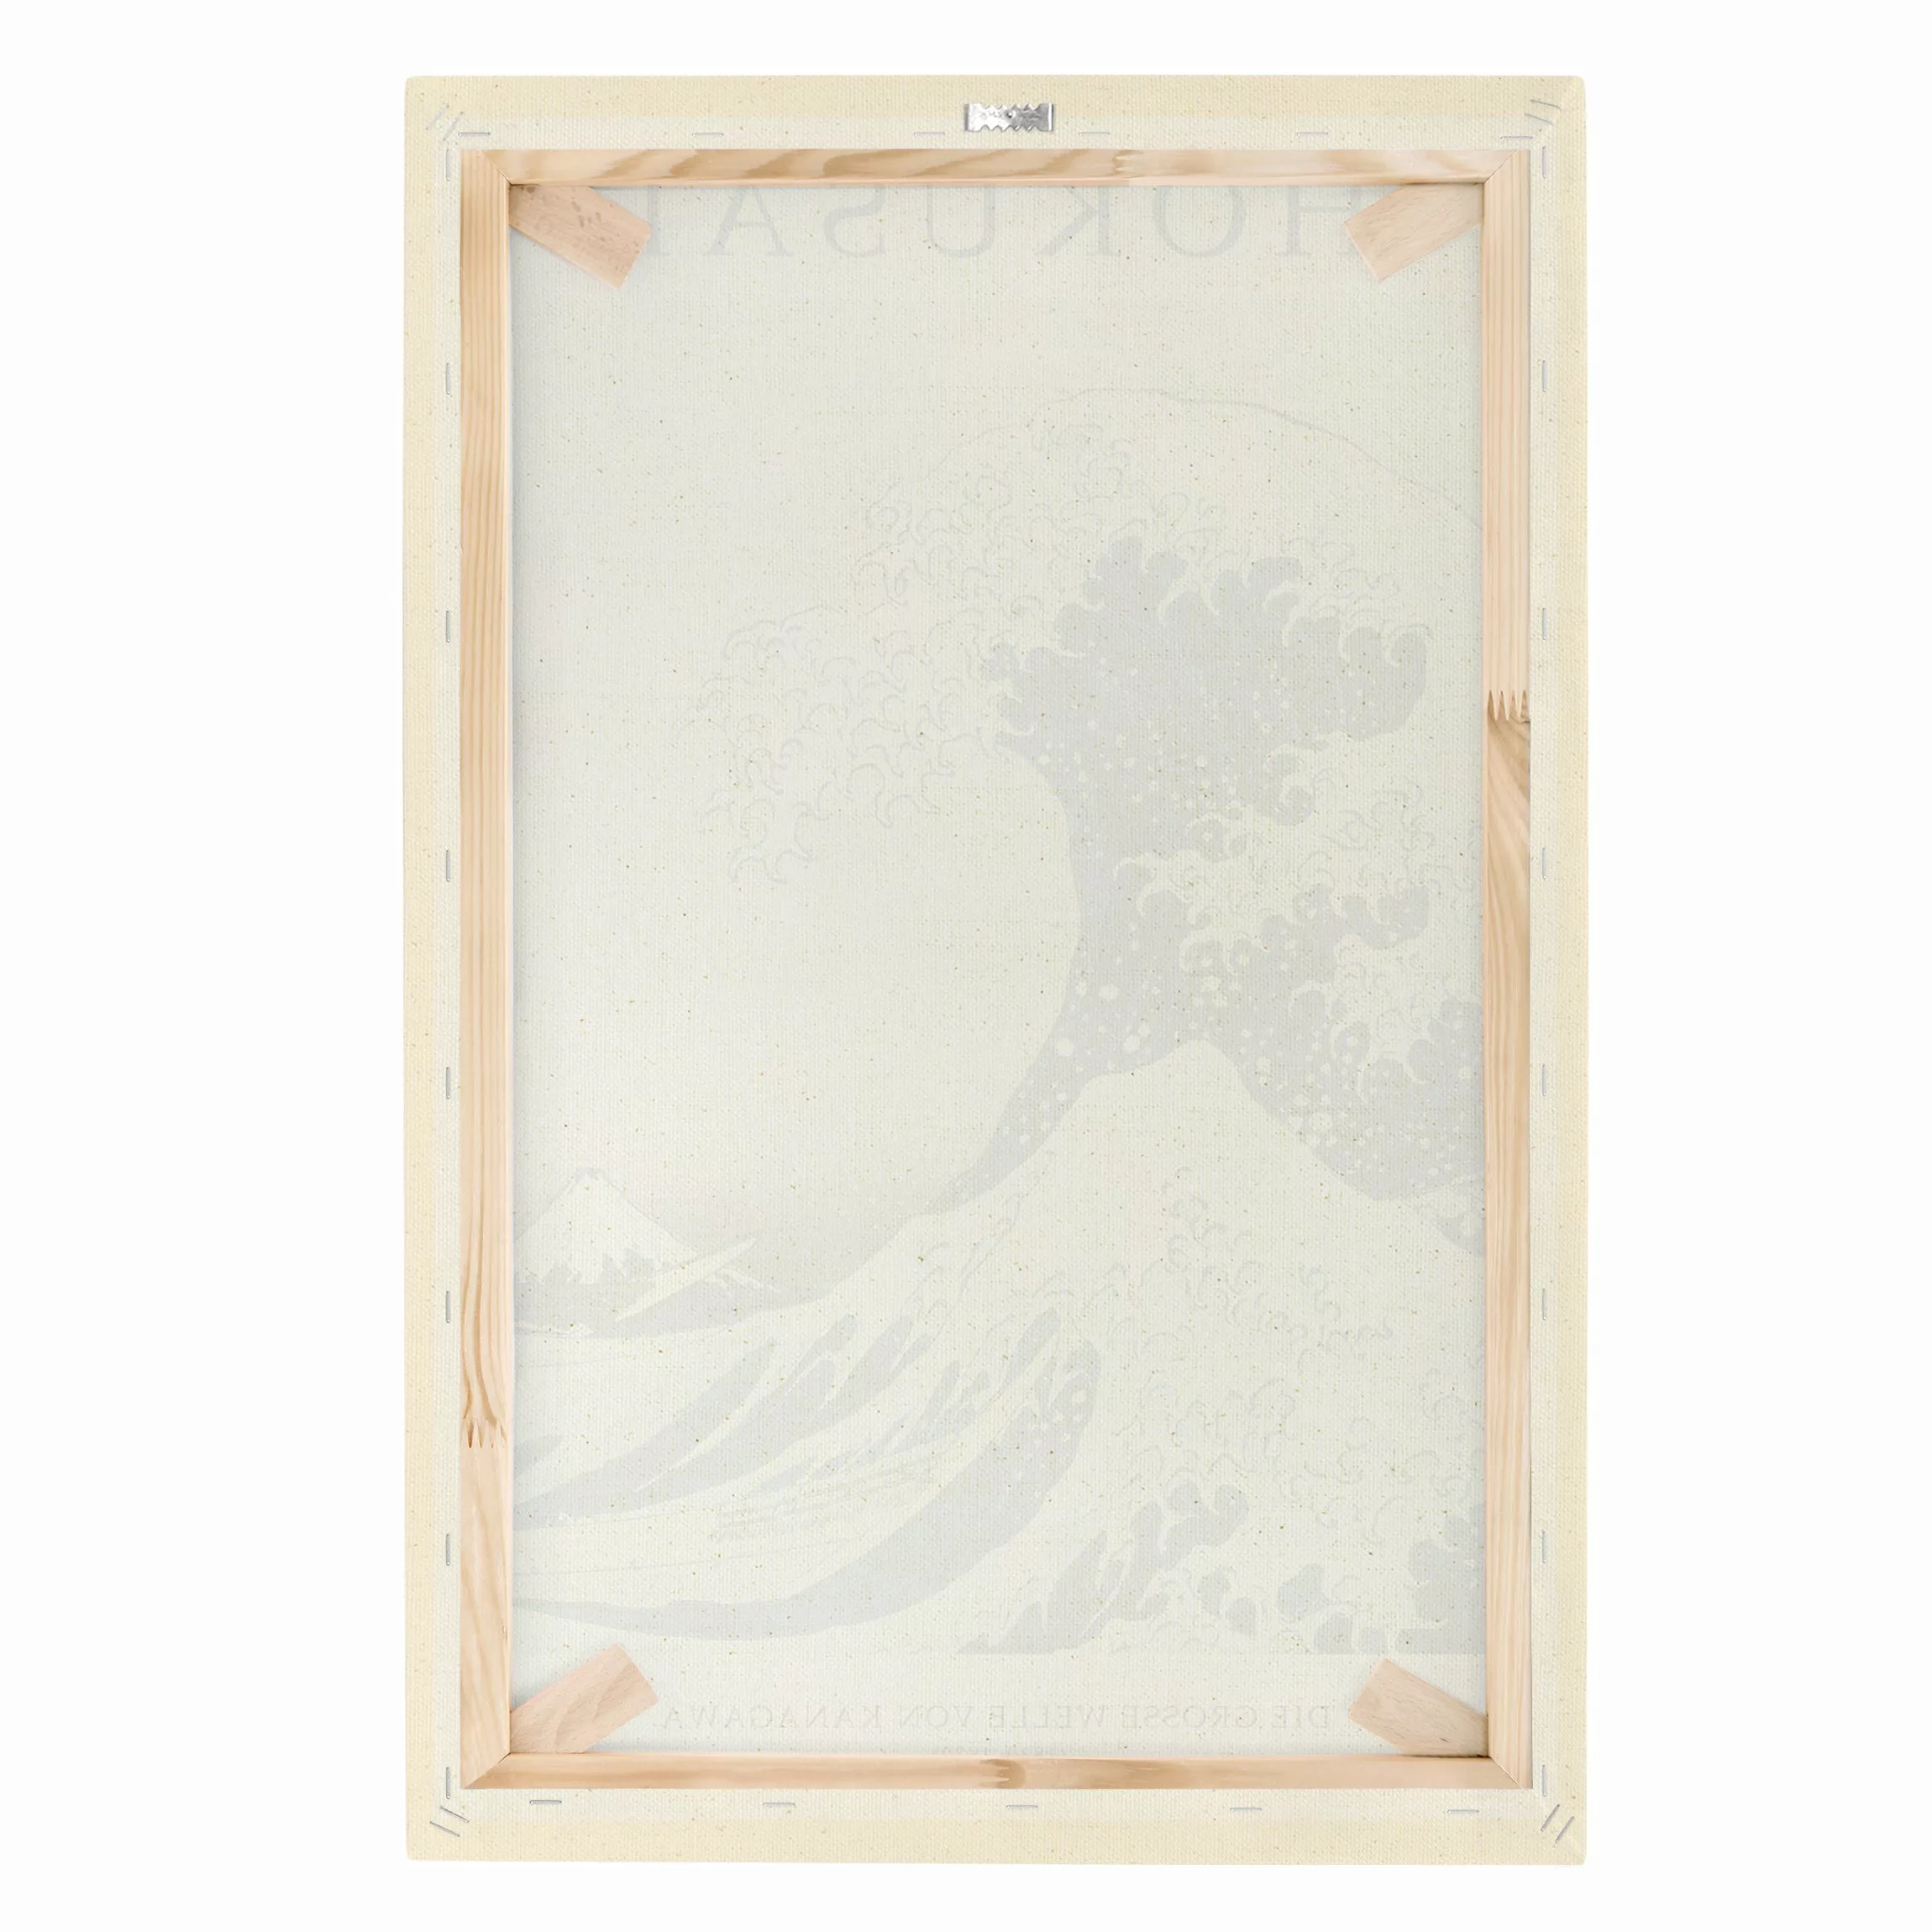 Leinwandbild auf Naturcanvas Katsushika Hokusai - Die grosse Welle von Kana günstig online kaufen